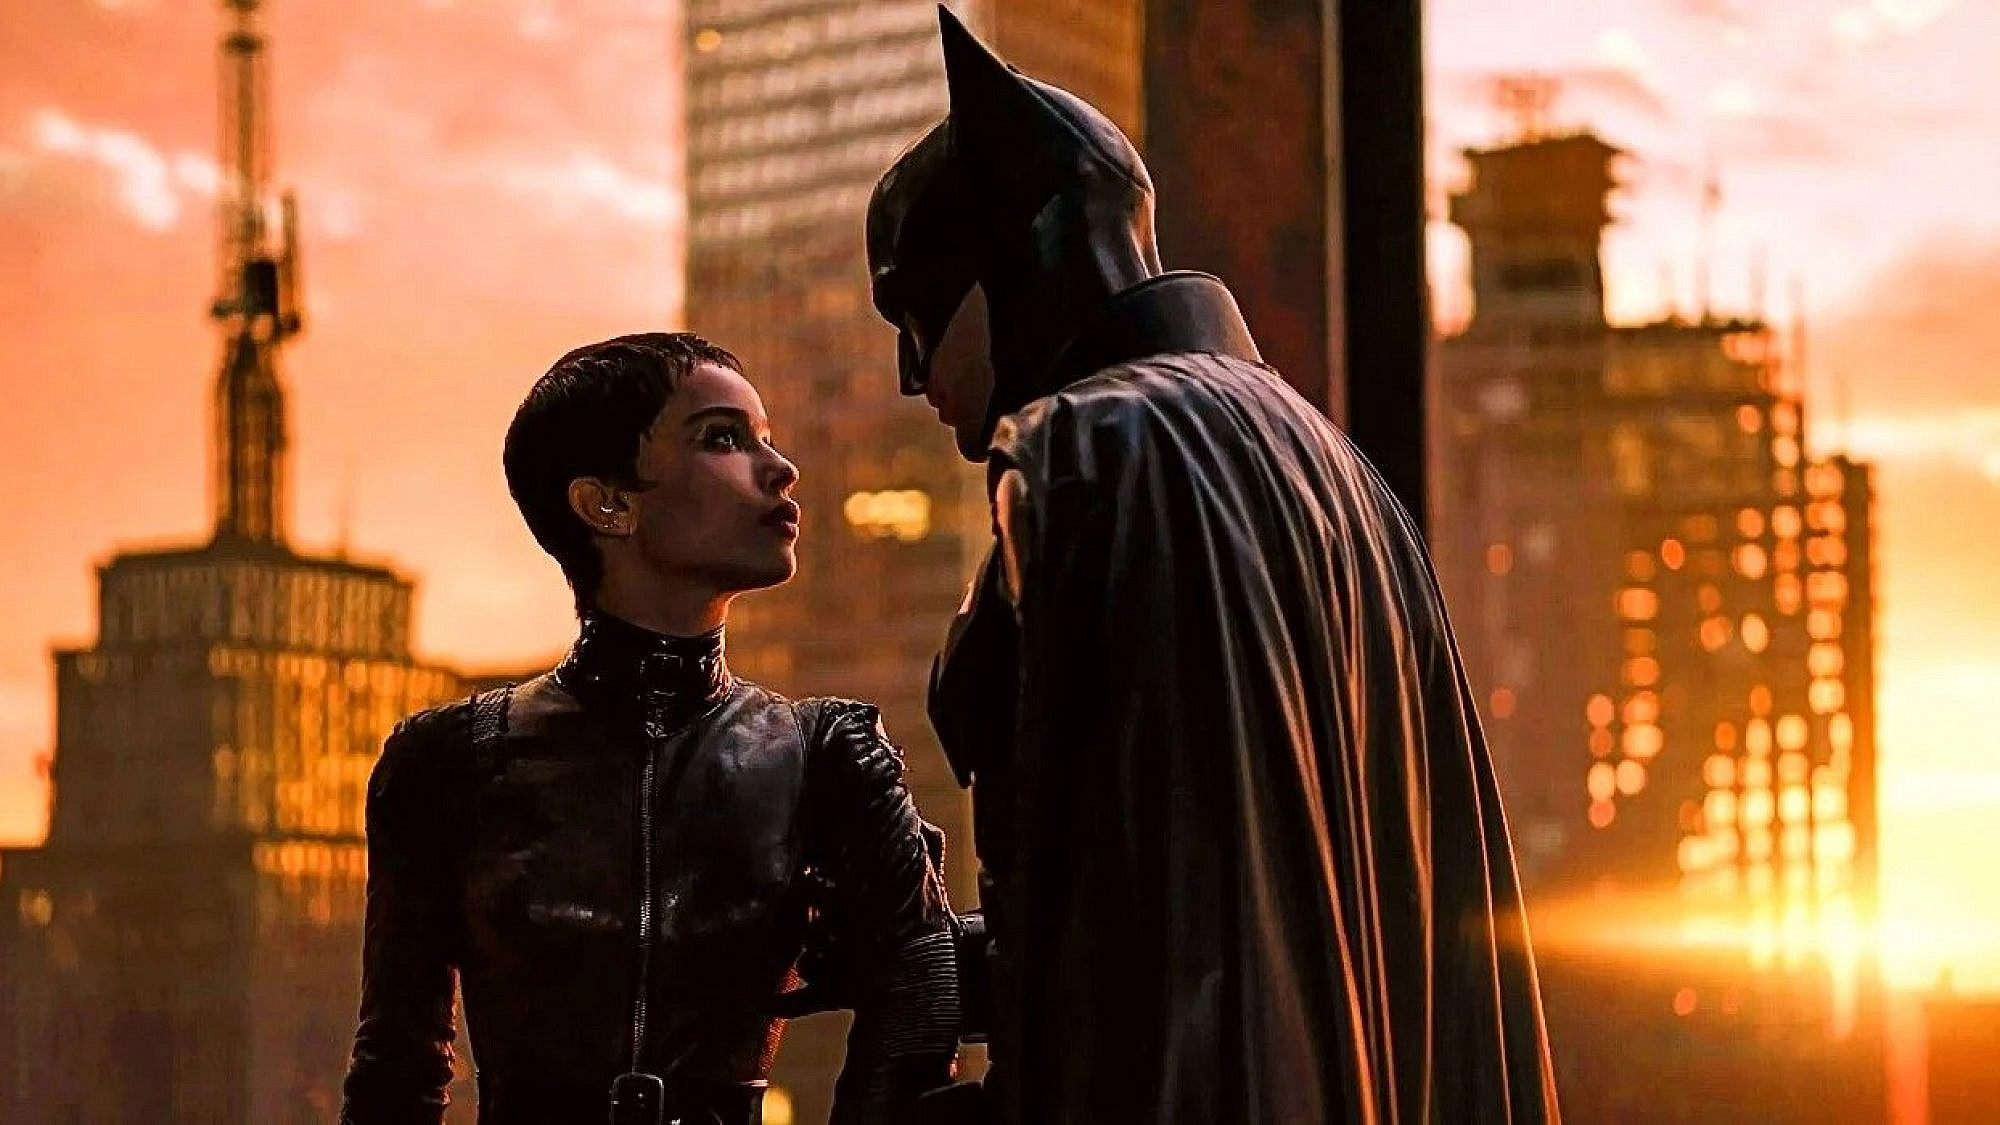 לוהטים כמו נשיקה אמתית בין עטלף לחתולה. רוברט פטינסון וזואי קרביץ. מתוך הסרט "באטמן"